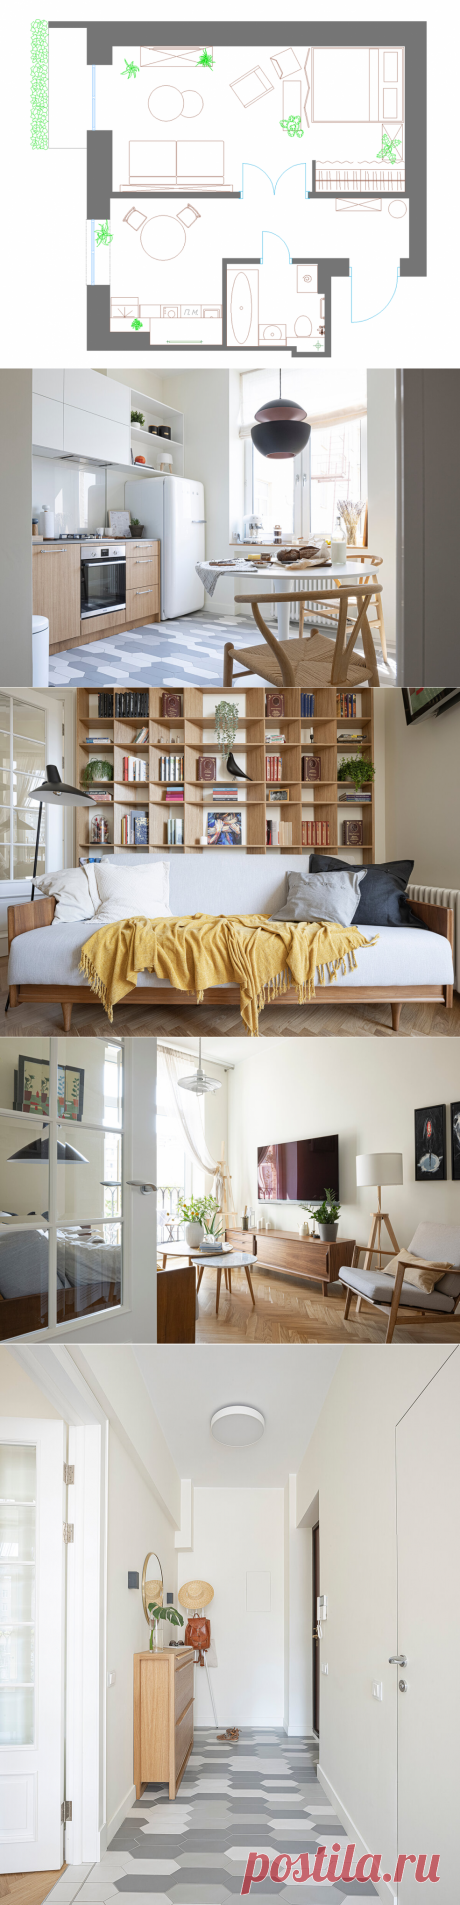 Маленькая, уютная квартира 41 м² в стиле mid-century | ELLE Decoration | Яндекс Дзен